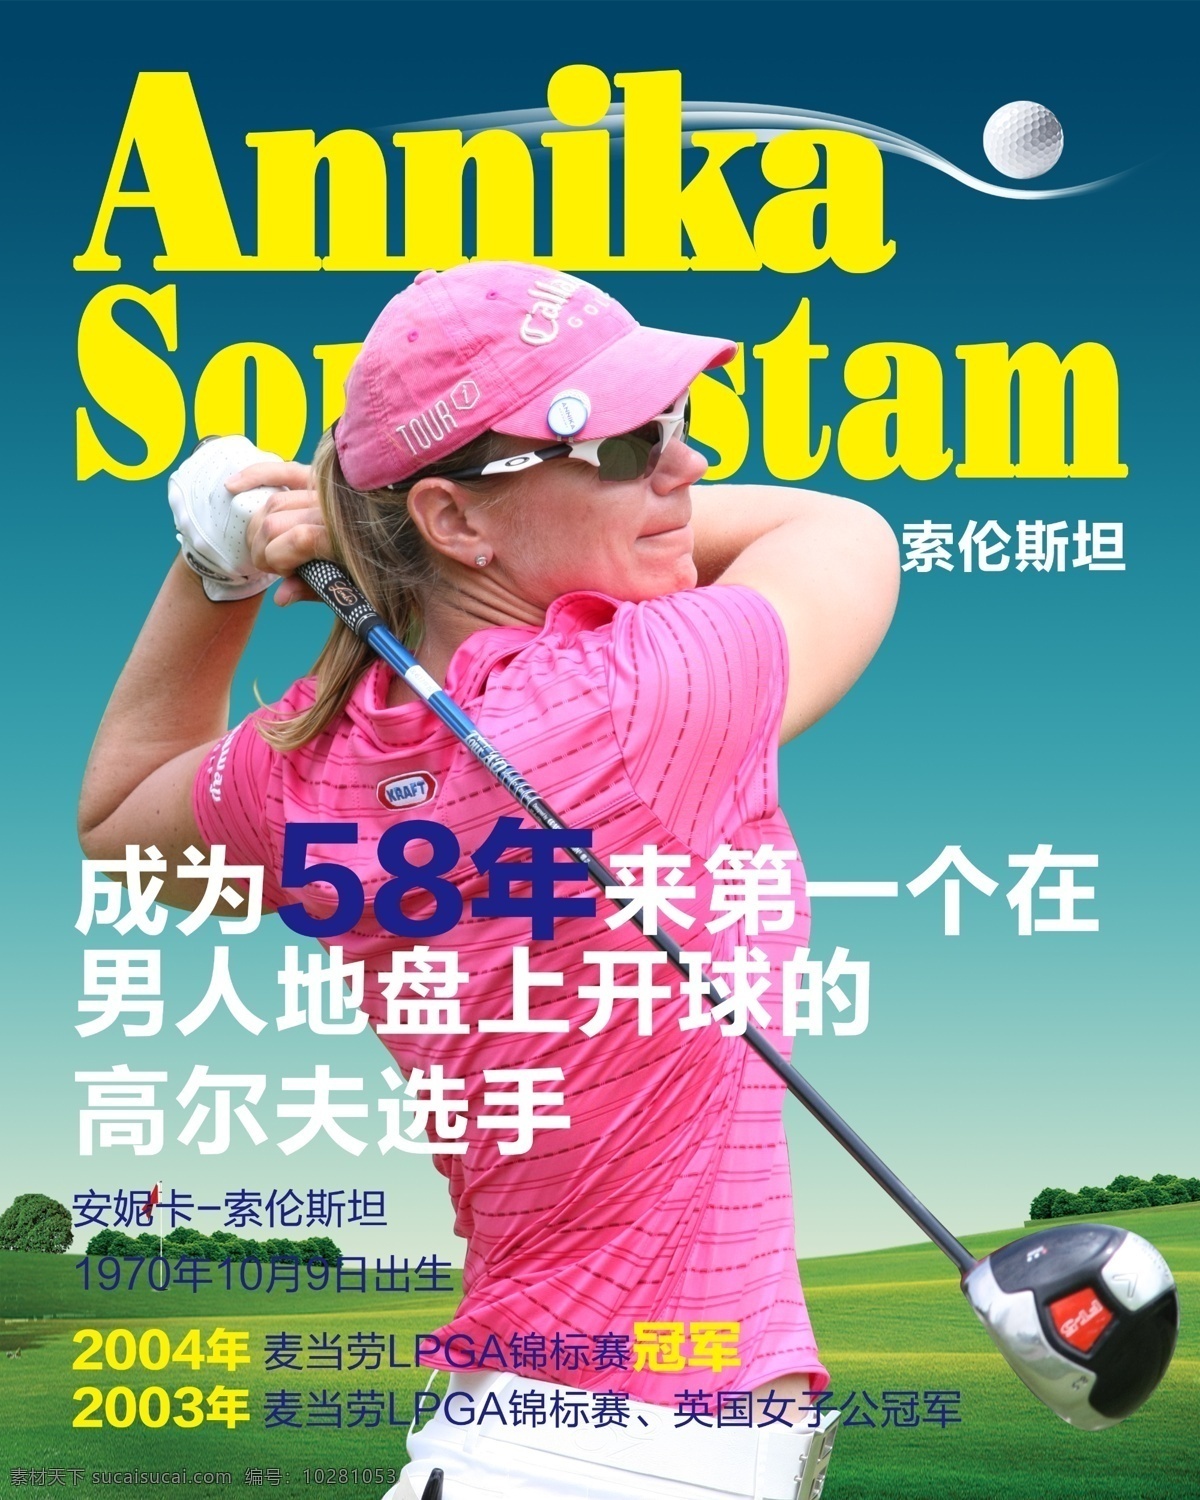 分层文件 高尔夫 封面设计 高尔夫球 高尔夫运动 广告设计模板 明星 杂志 封面 展板 杂志封面 运动 索伦斯坦 女高尔夫球员 球员 运动员 高尔夫球员 高尔夫明星 高尔夫球星 源文件 其他海报设计